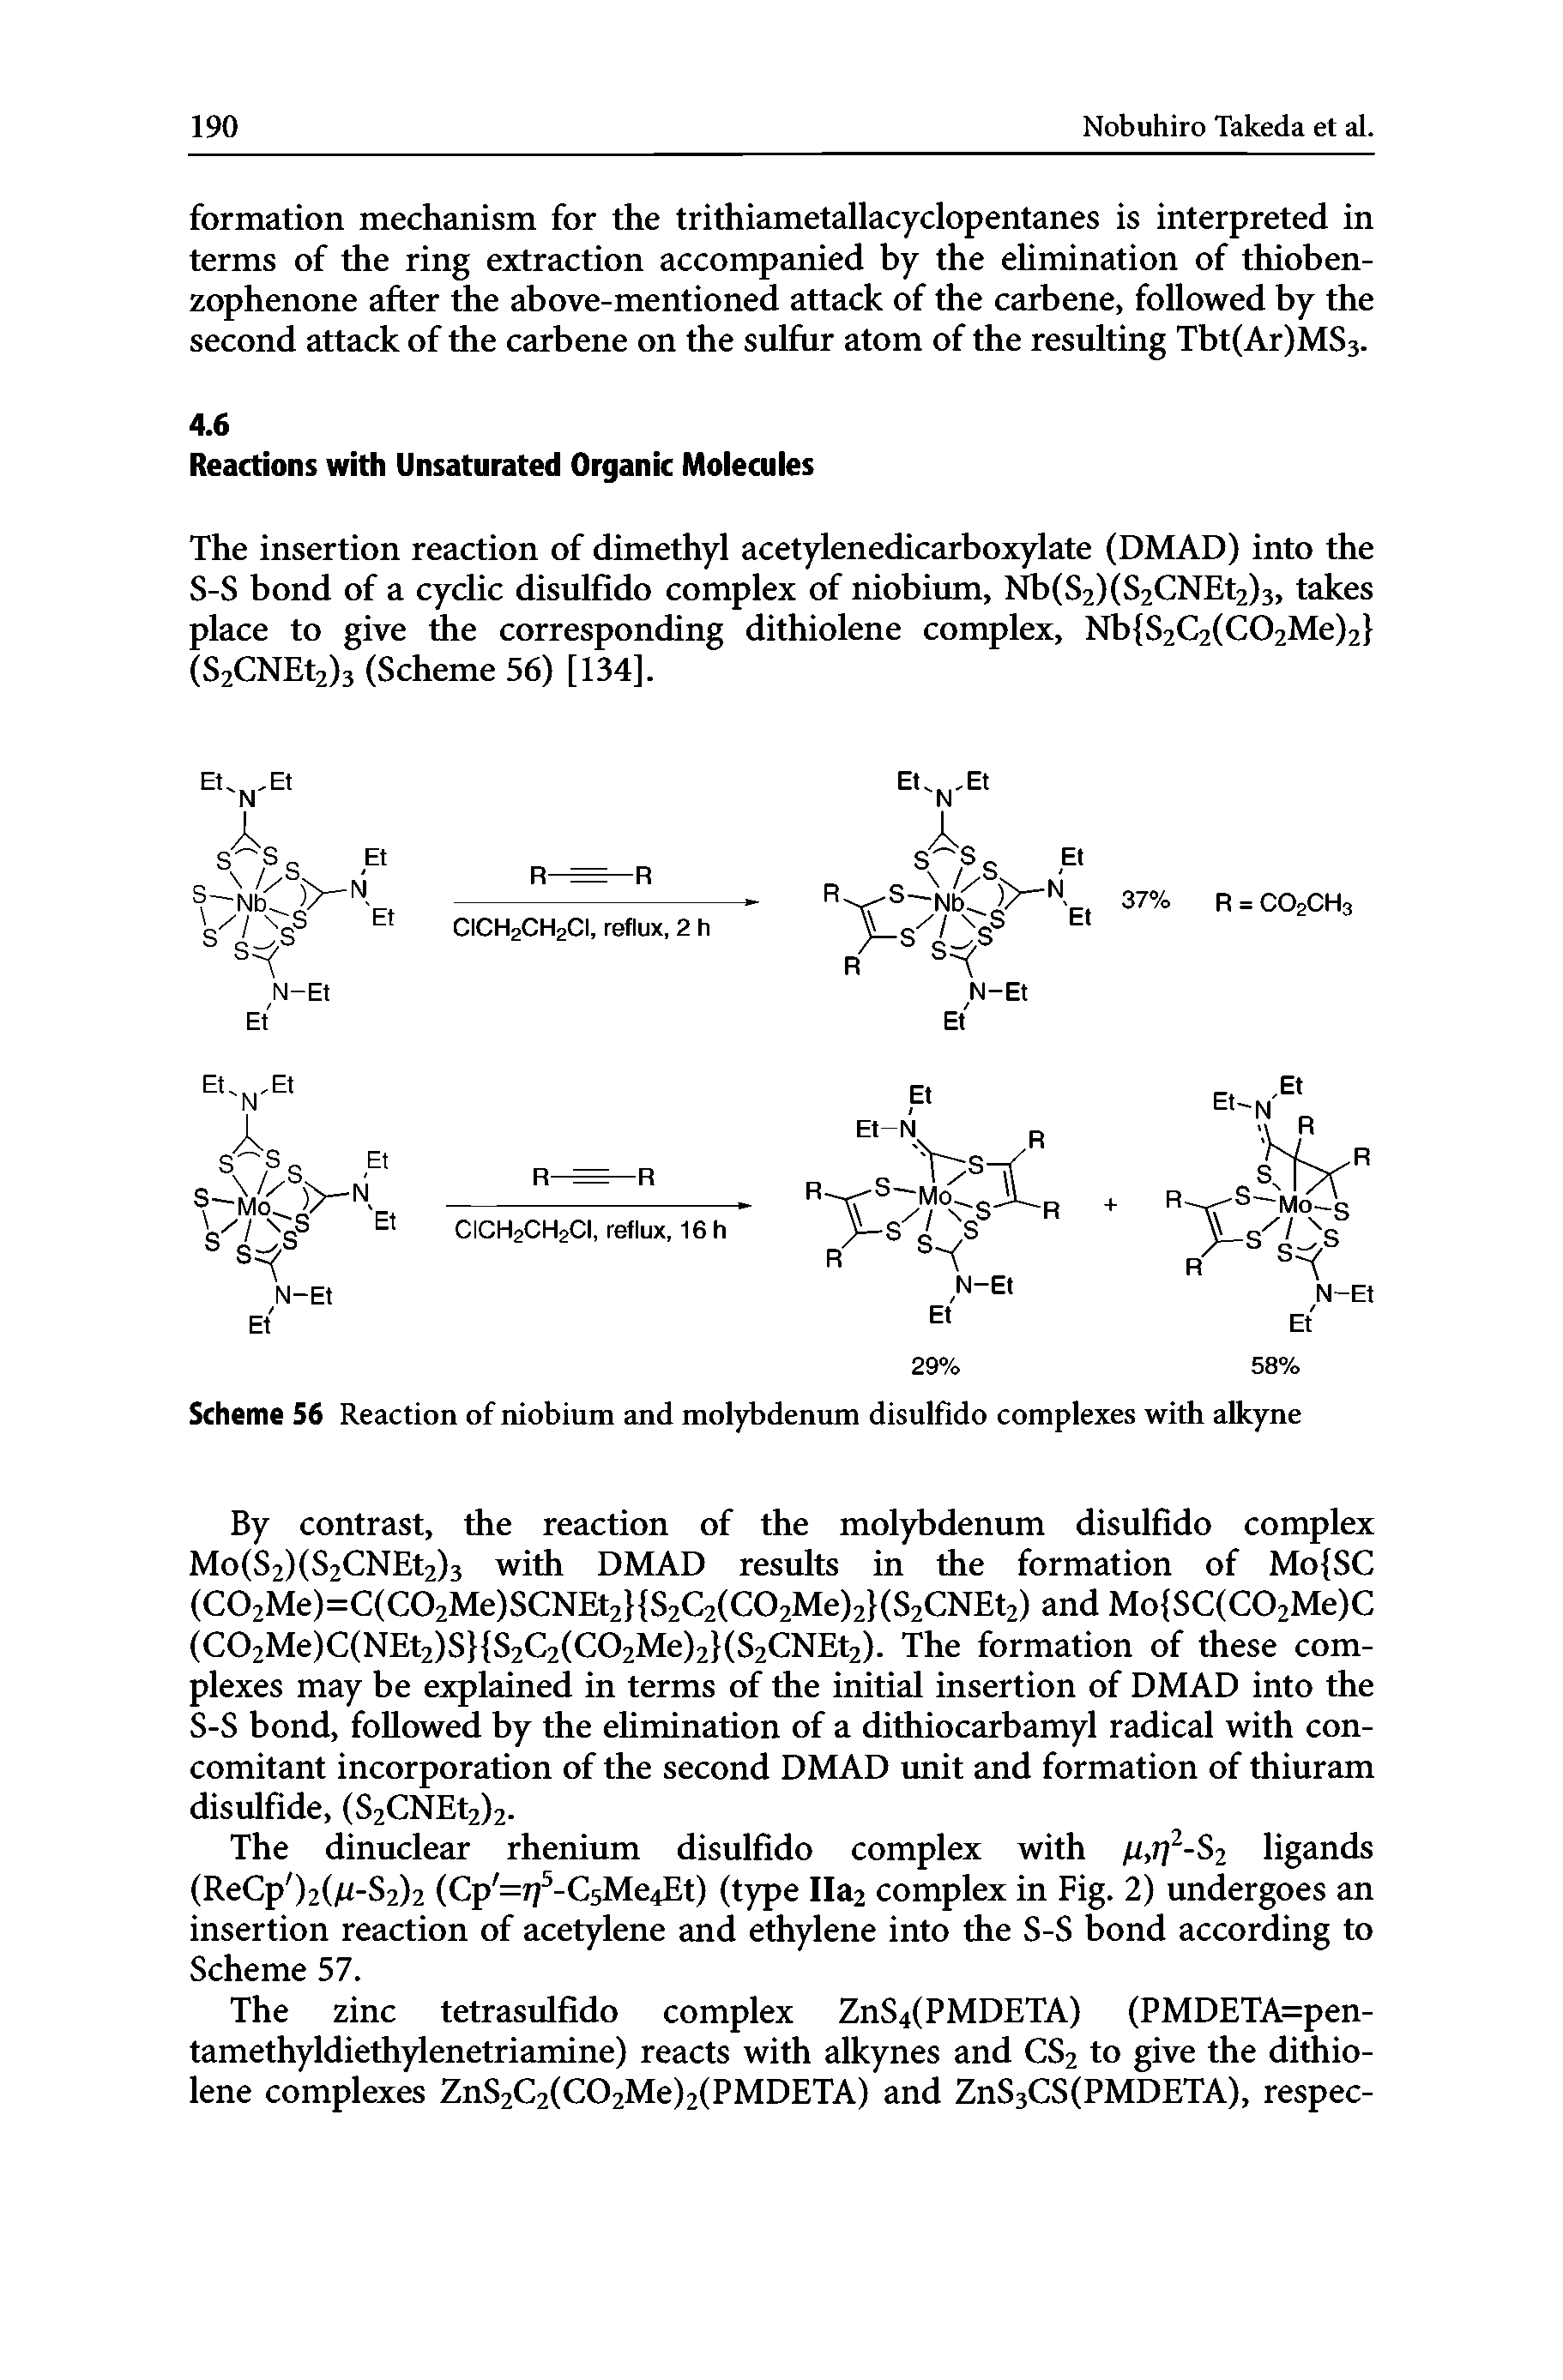 Scheme 56 Reaction of niobium and molybdenum disulfido complexes with alkyne...